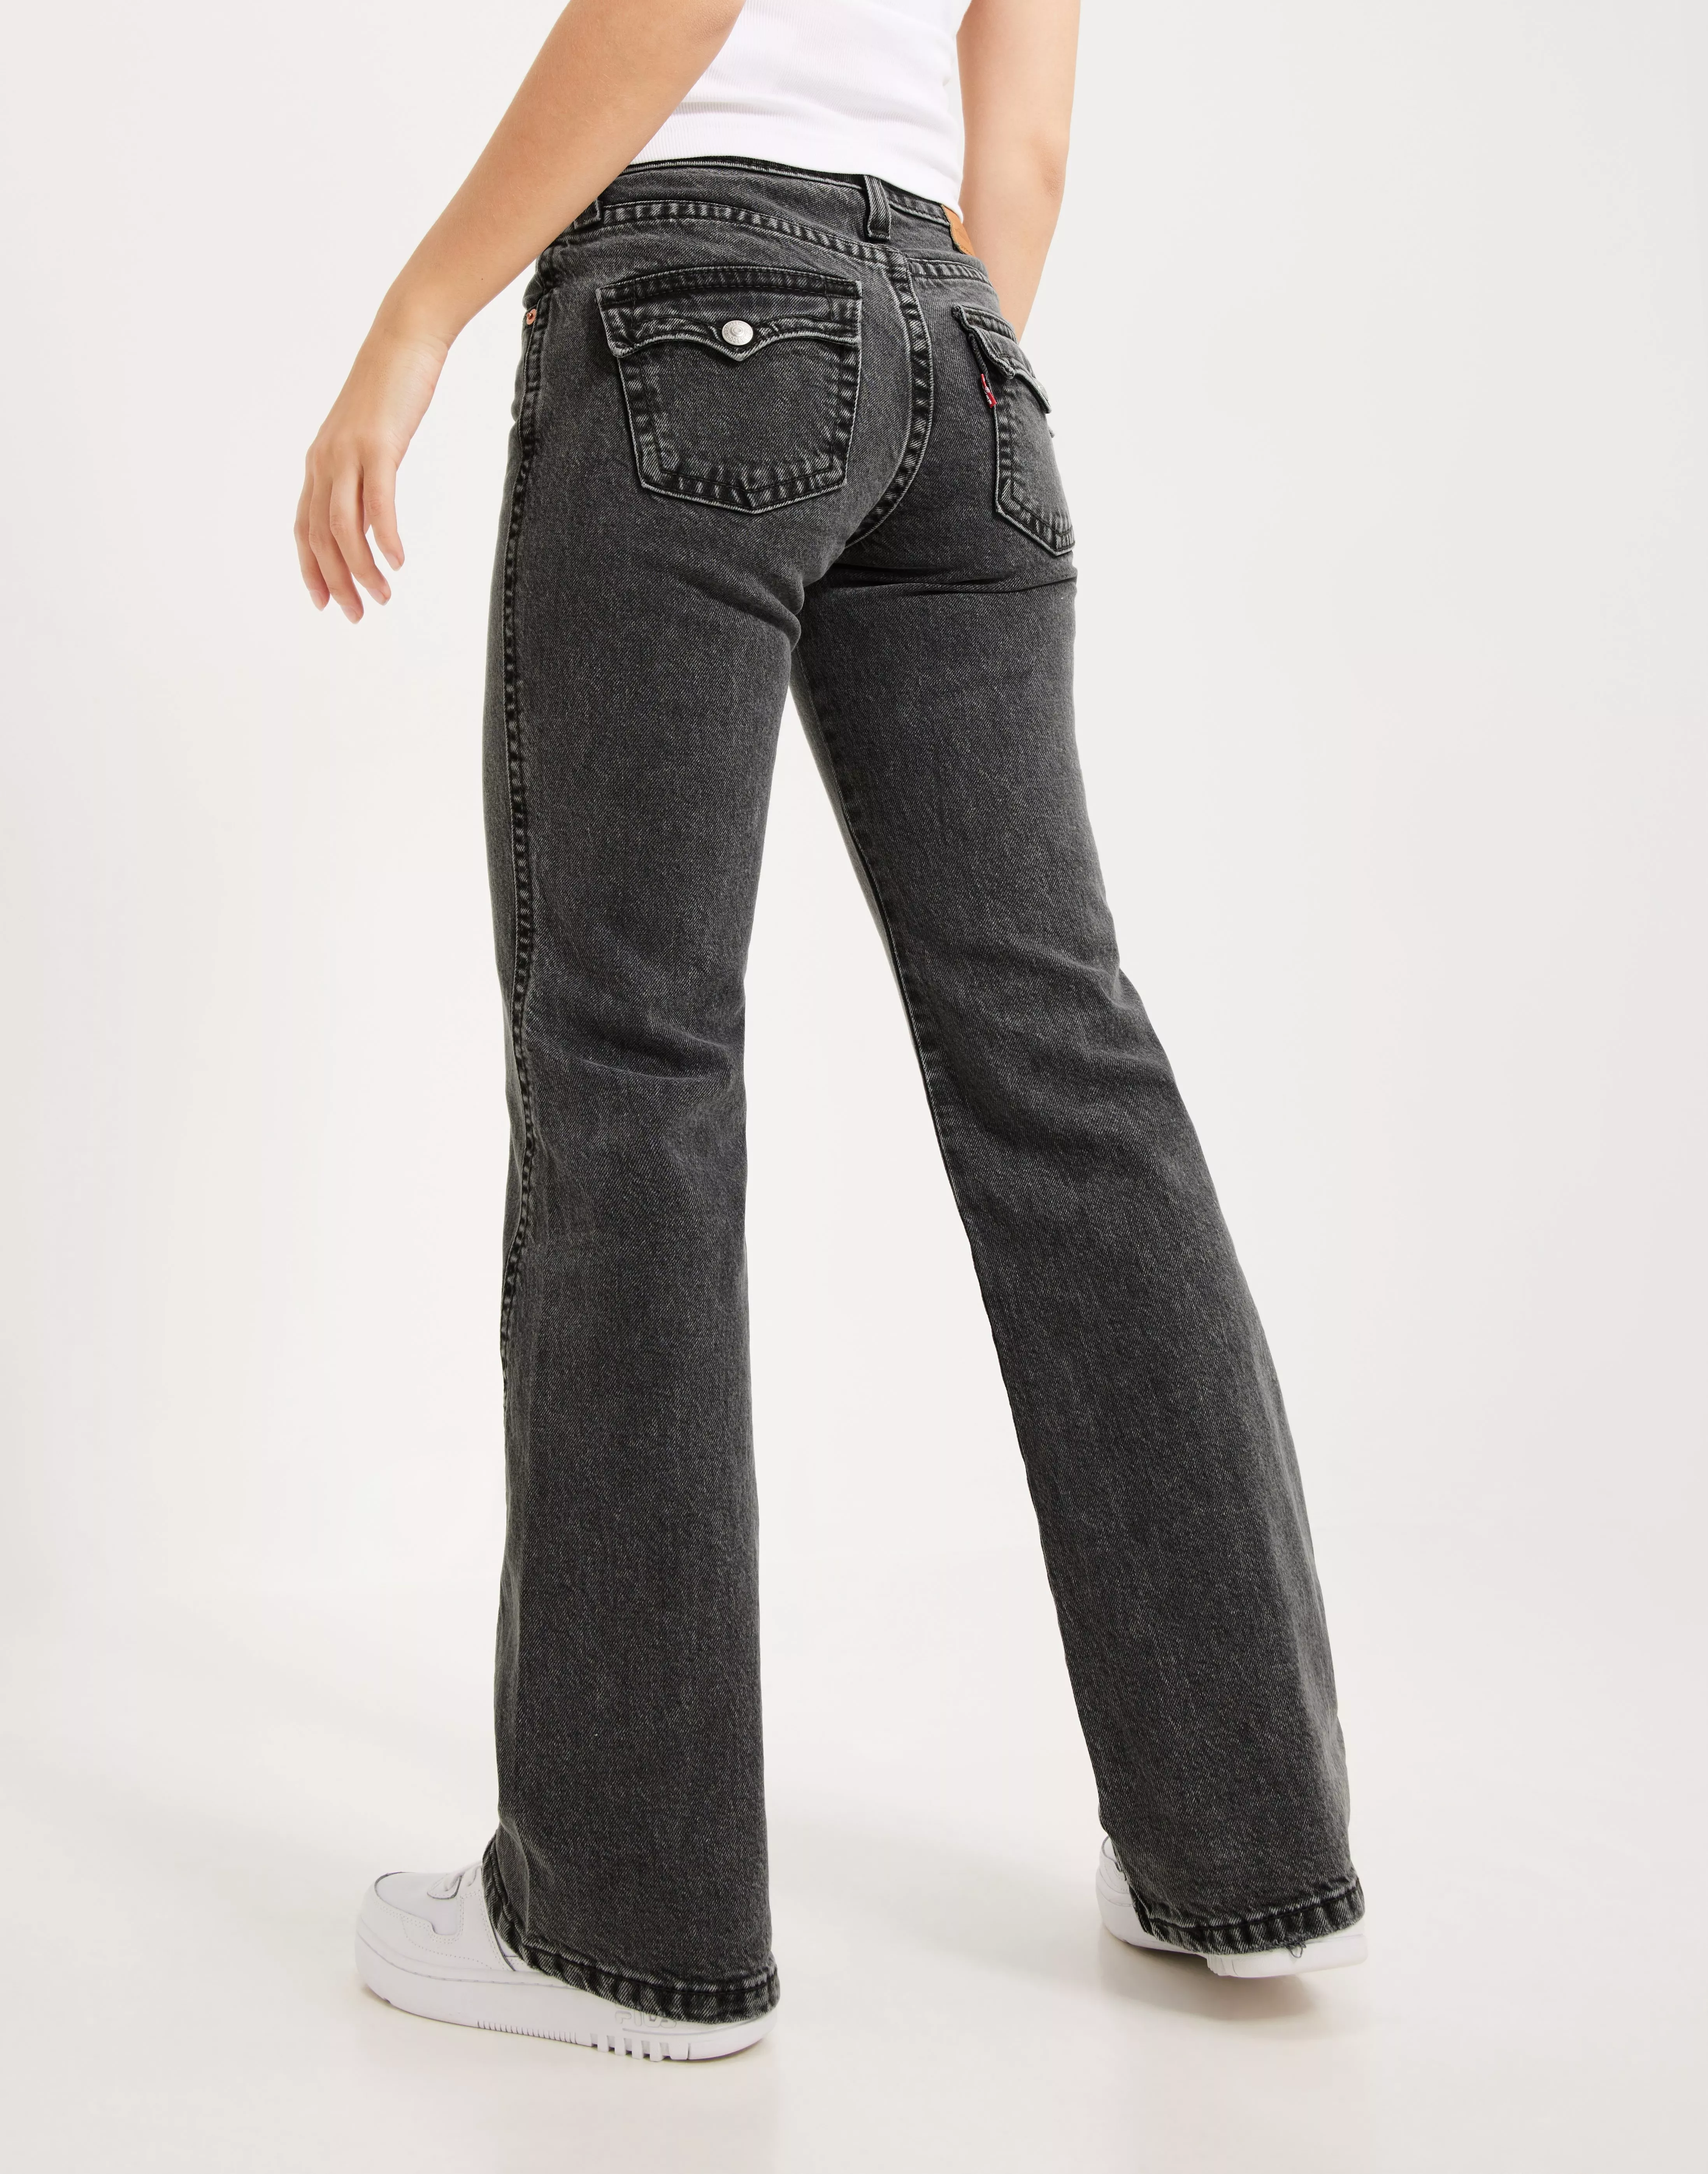 Noughties Bootcut Women's Jeans - Dark Wash